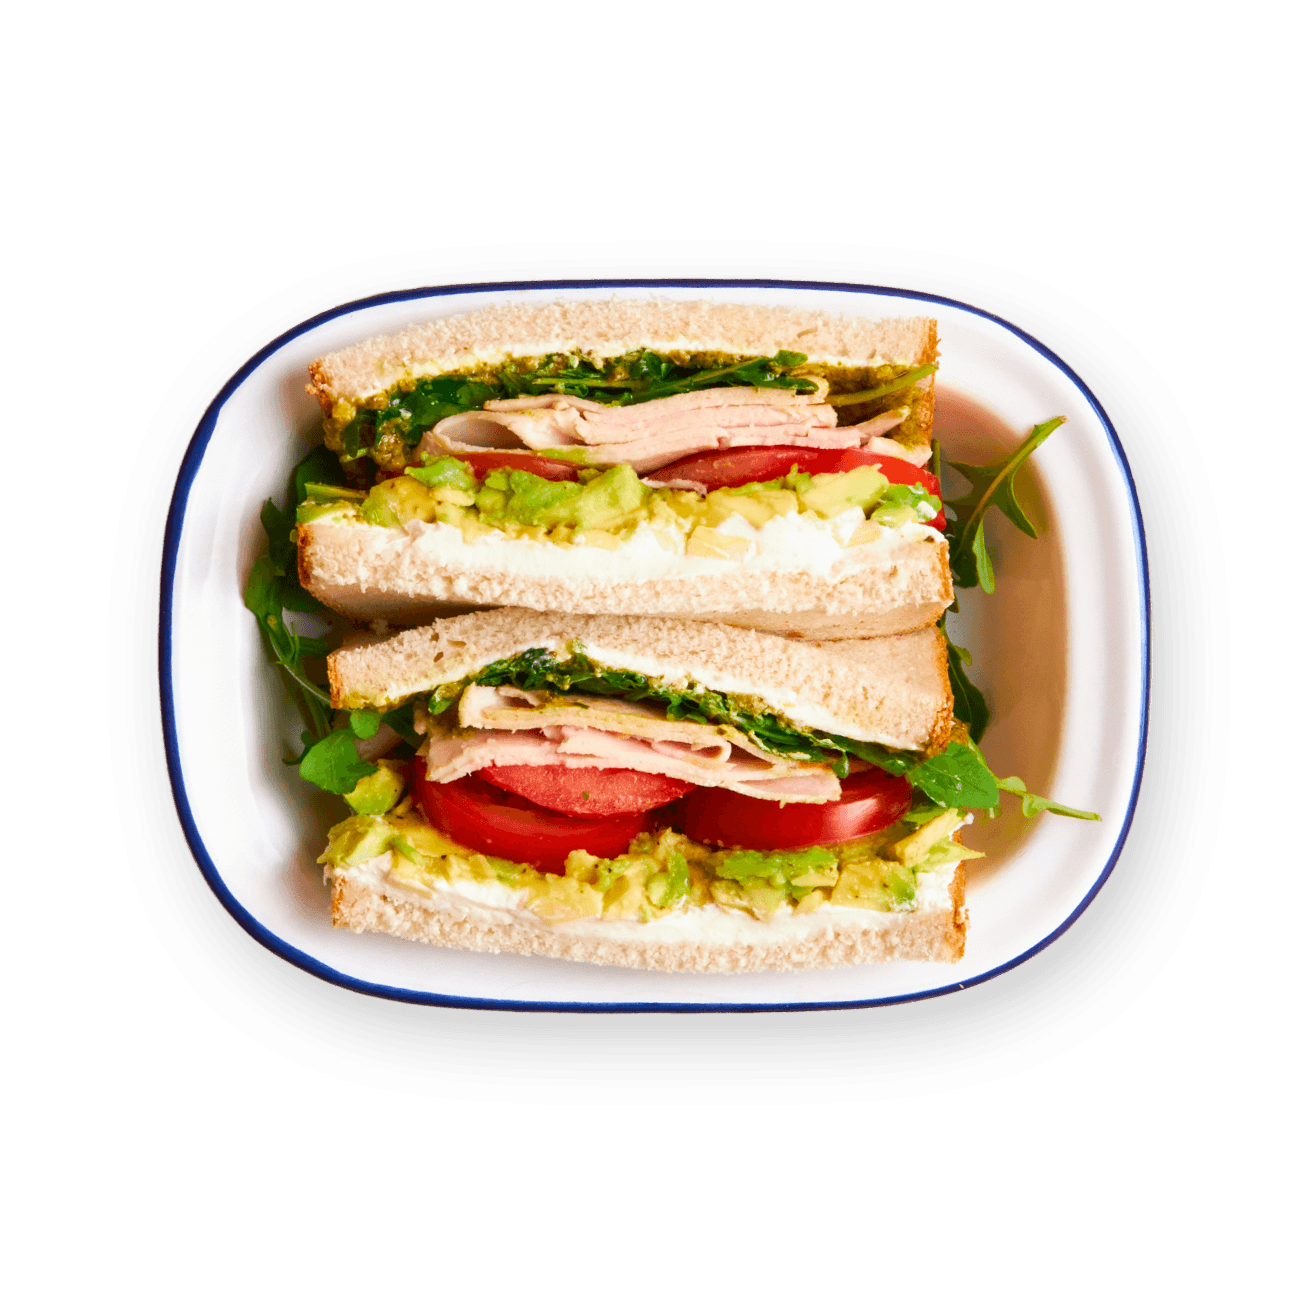 pesto-chicken-and-avocado-sandwich